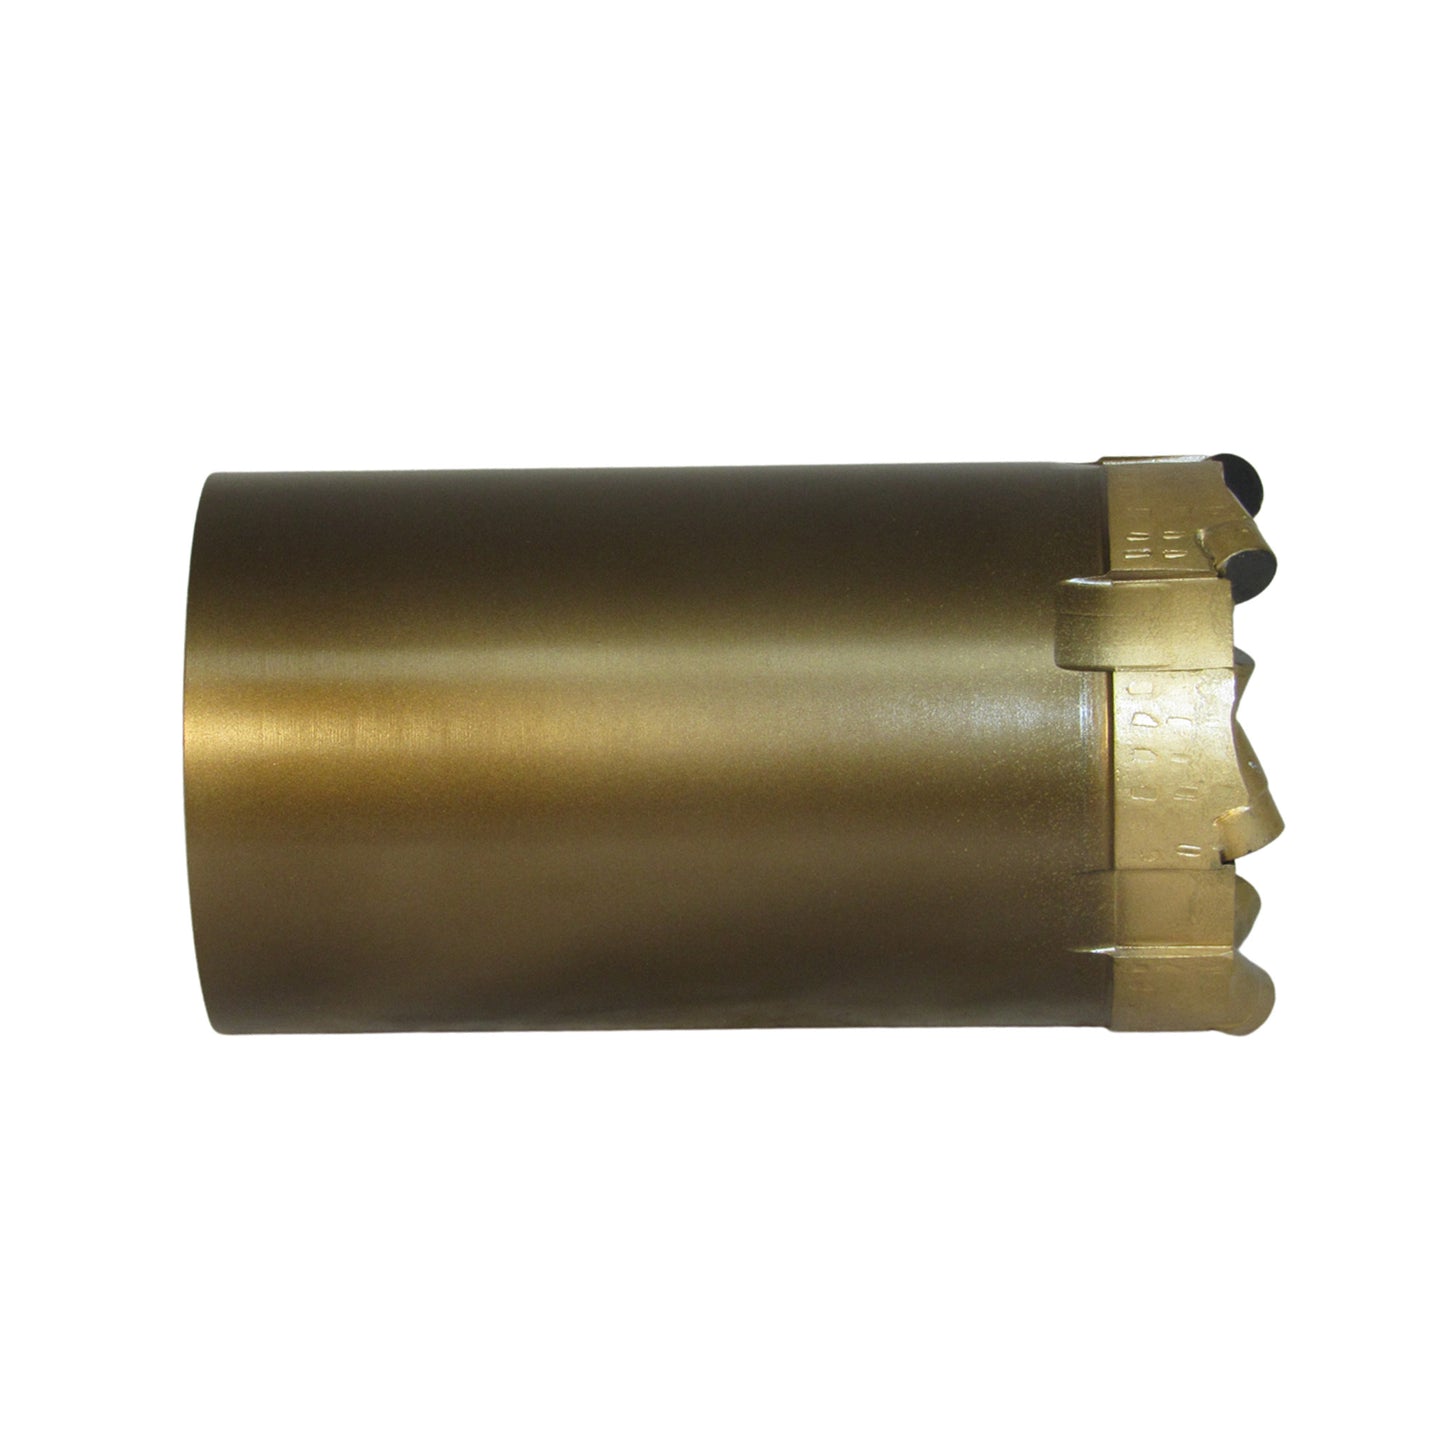 Broca perforadora Phoenix T6-101 - PCD - Estándar